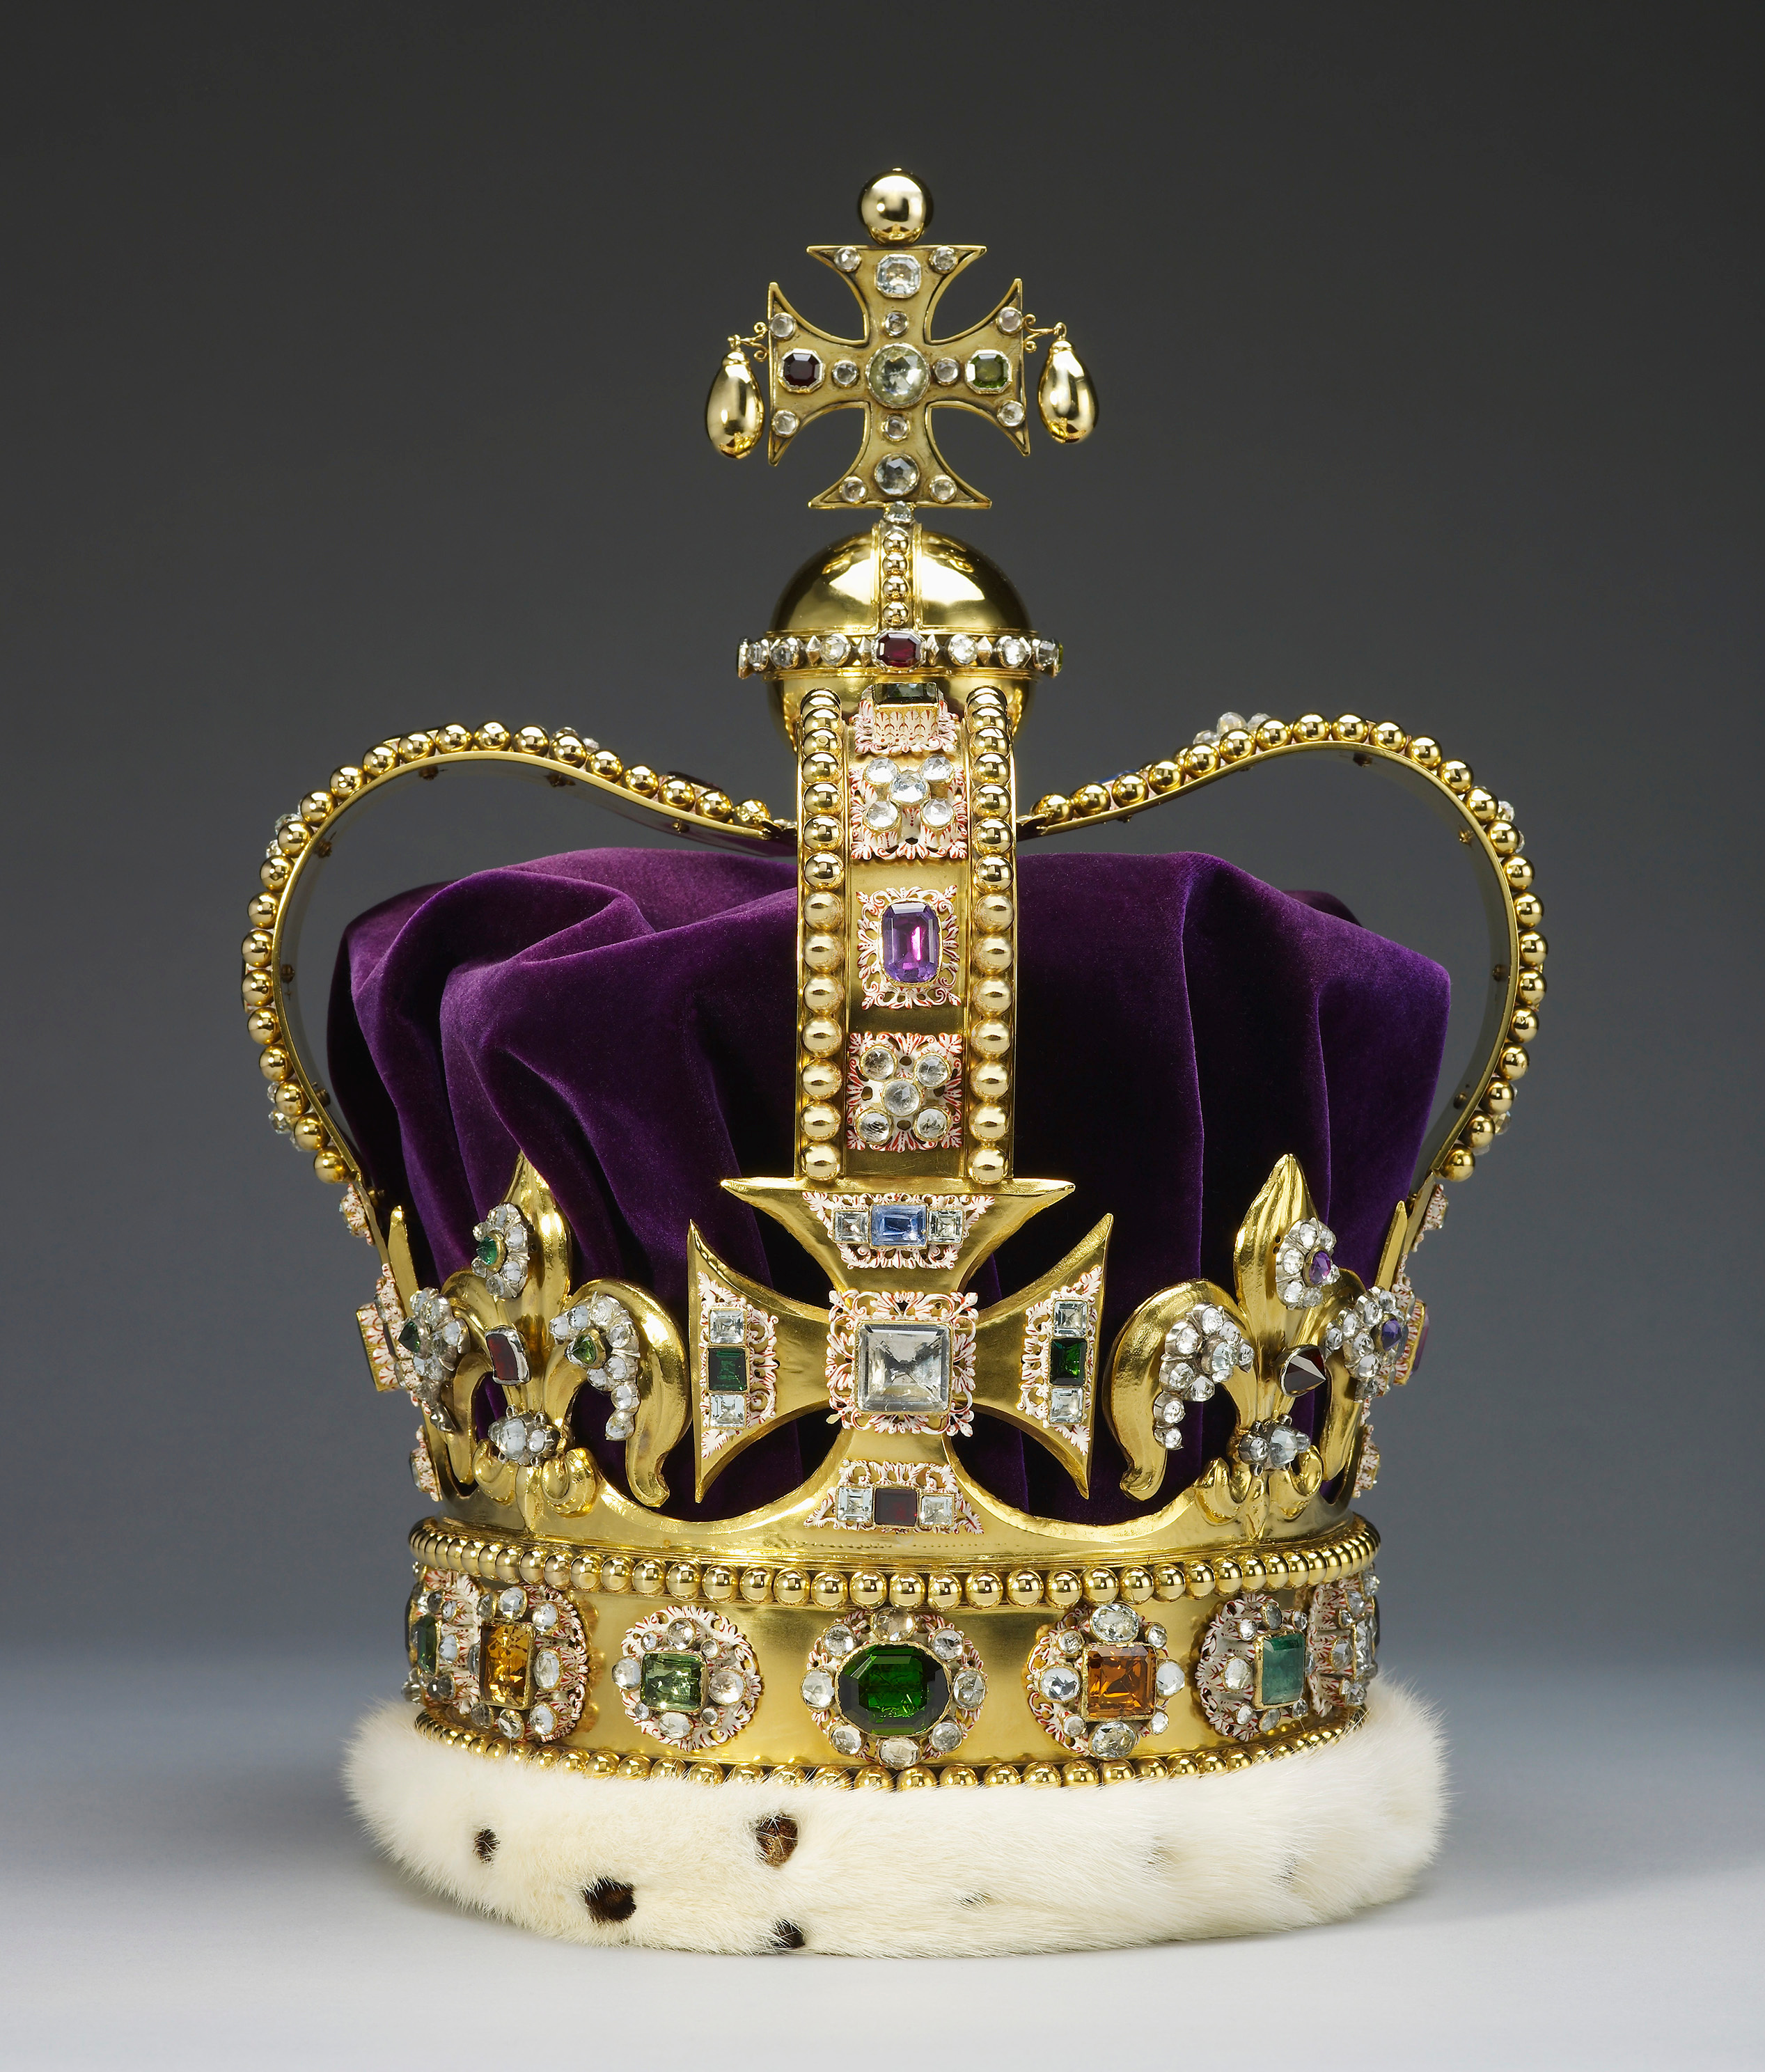 Coroana britanică va fi modificată pentru încoronarea regelui Charles. Când va avea loc evenimentul